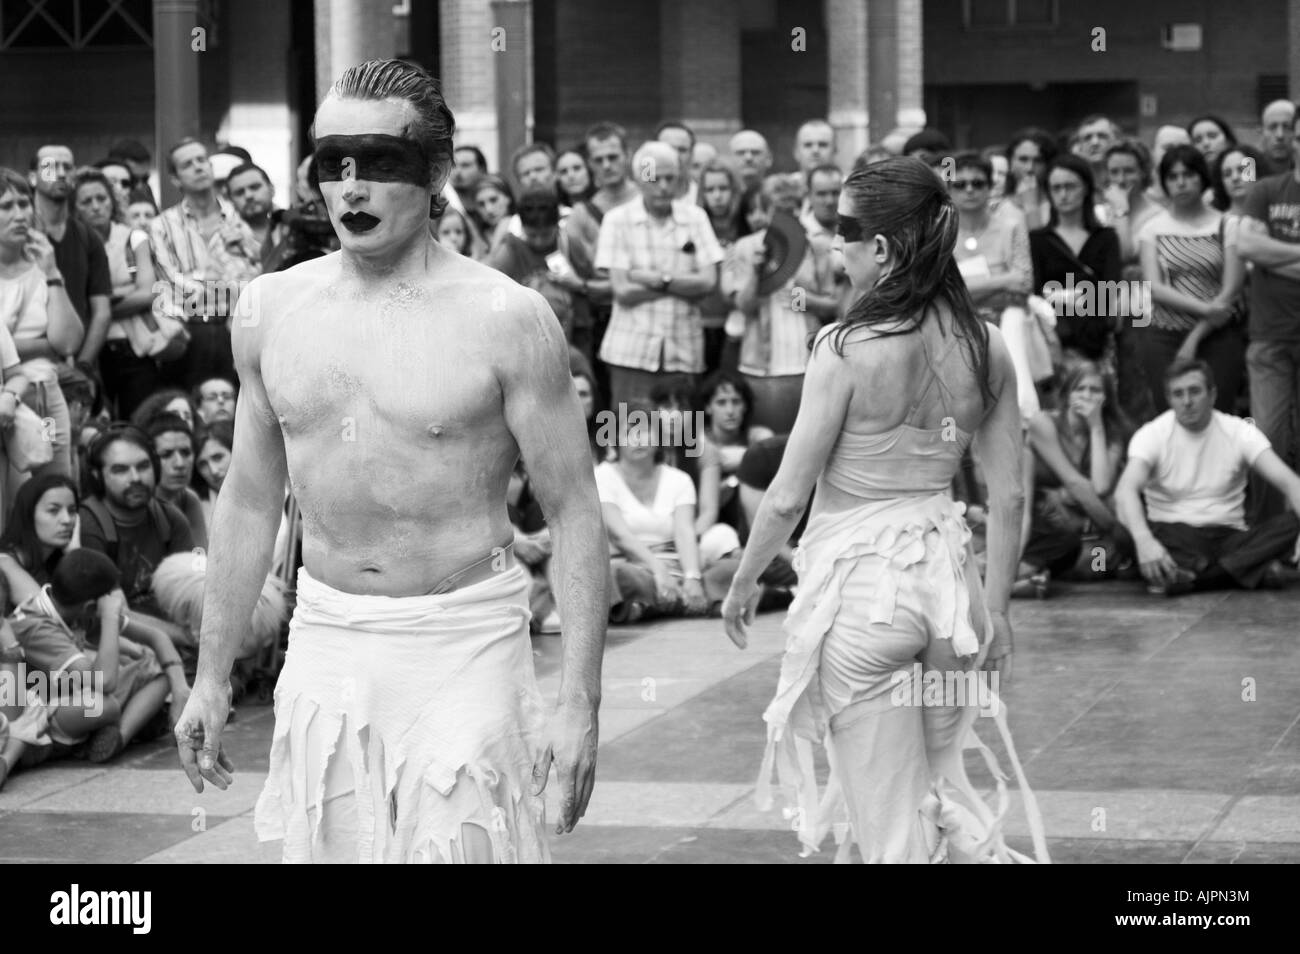 Danseurs dans une danse contemporaine et théâtre de rue festival. Plaza San Pedro Nolasco, Zaragoza, Aragon, Espagne. Banque D'Images